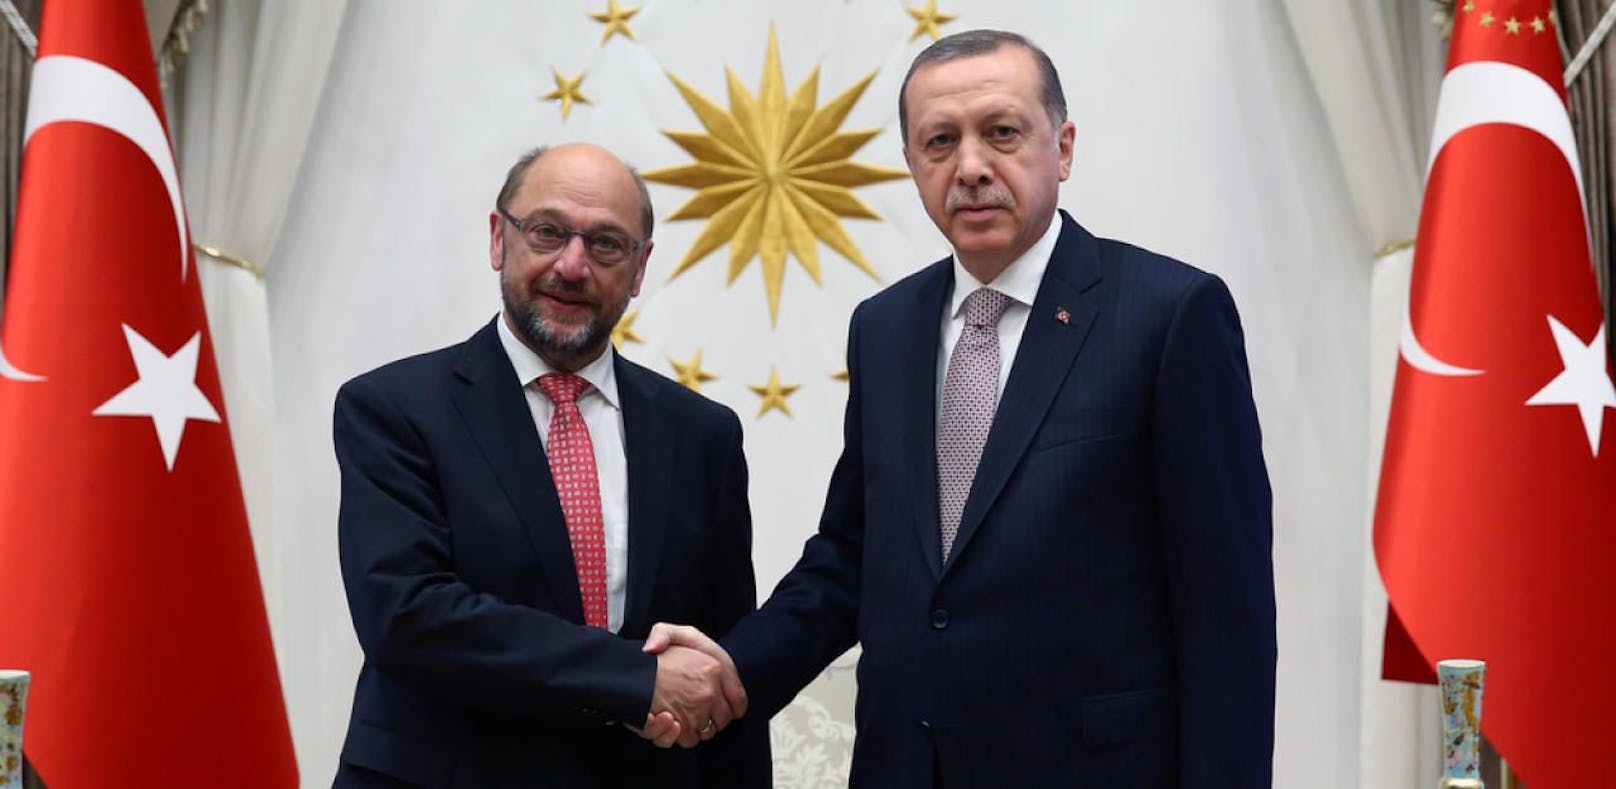 Martin Schulz bei einem früheren Treffen mit Recep Tayyip Erdogan.